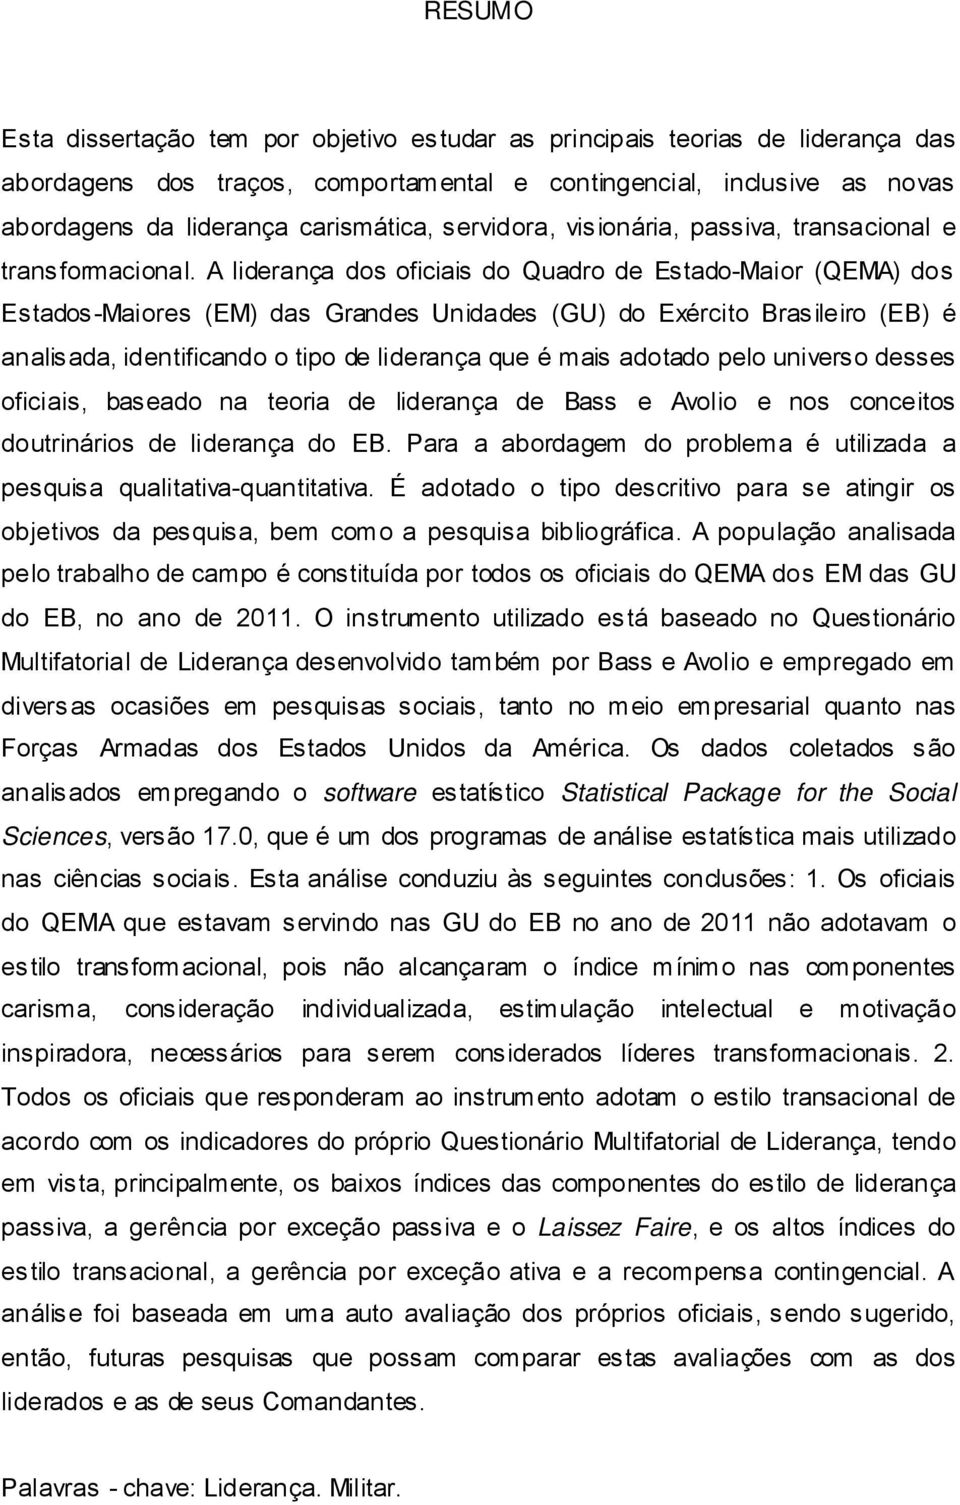 A liderança dos oficiais do Quadro de Estado-Maior (QEMA) dos Estados-Maiores (EM) das Grandes Unidades (GU) do Exército Brasileiro (EB) é analisada, identificando o tipo de liderança que é mais